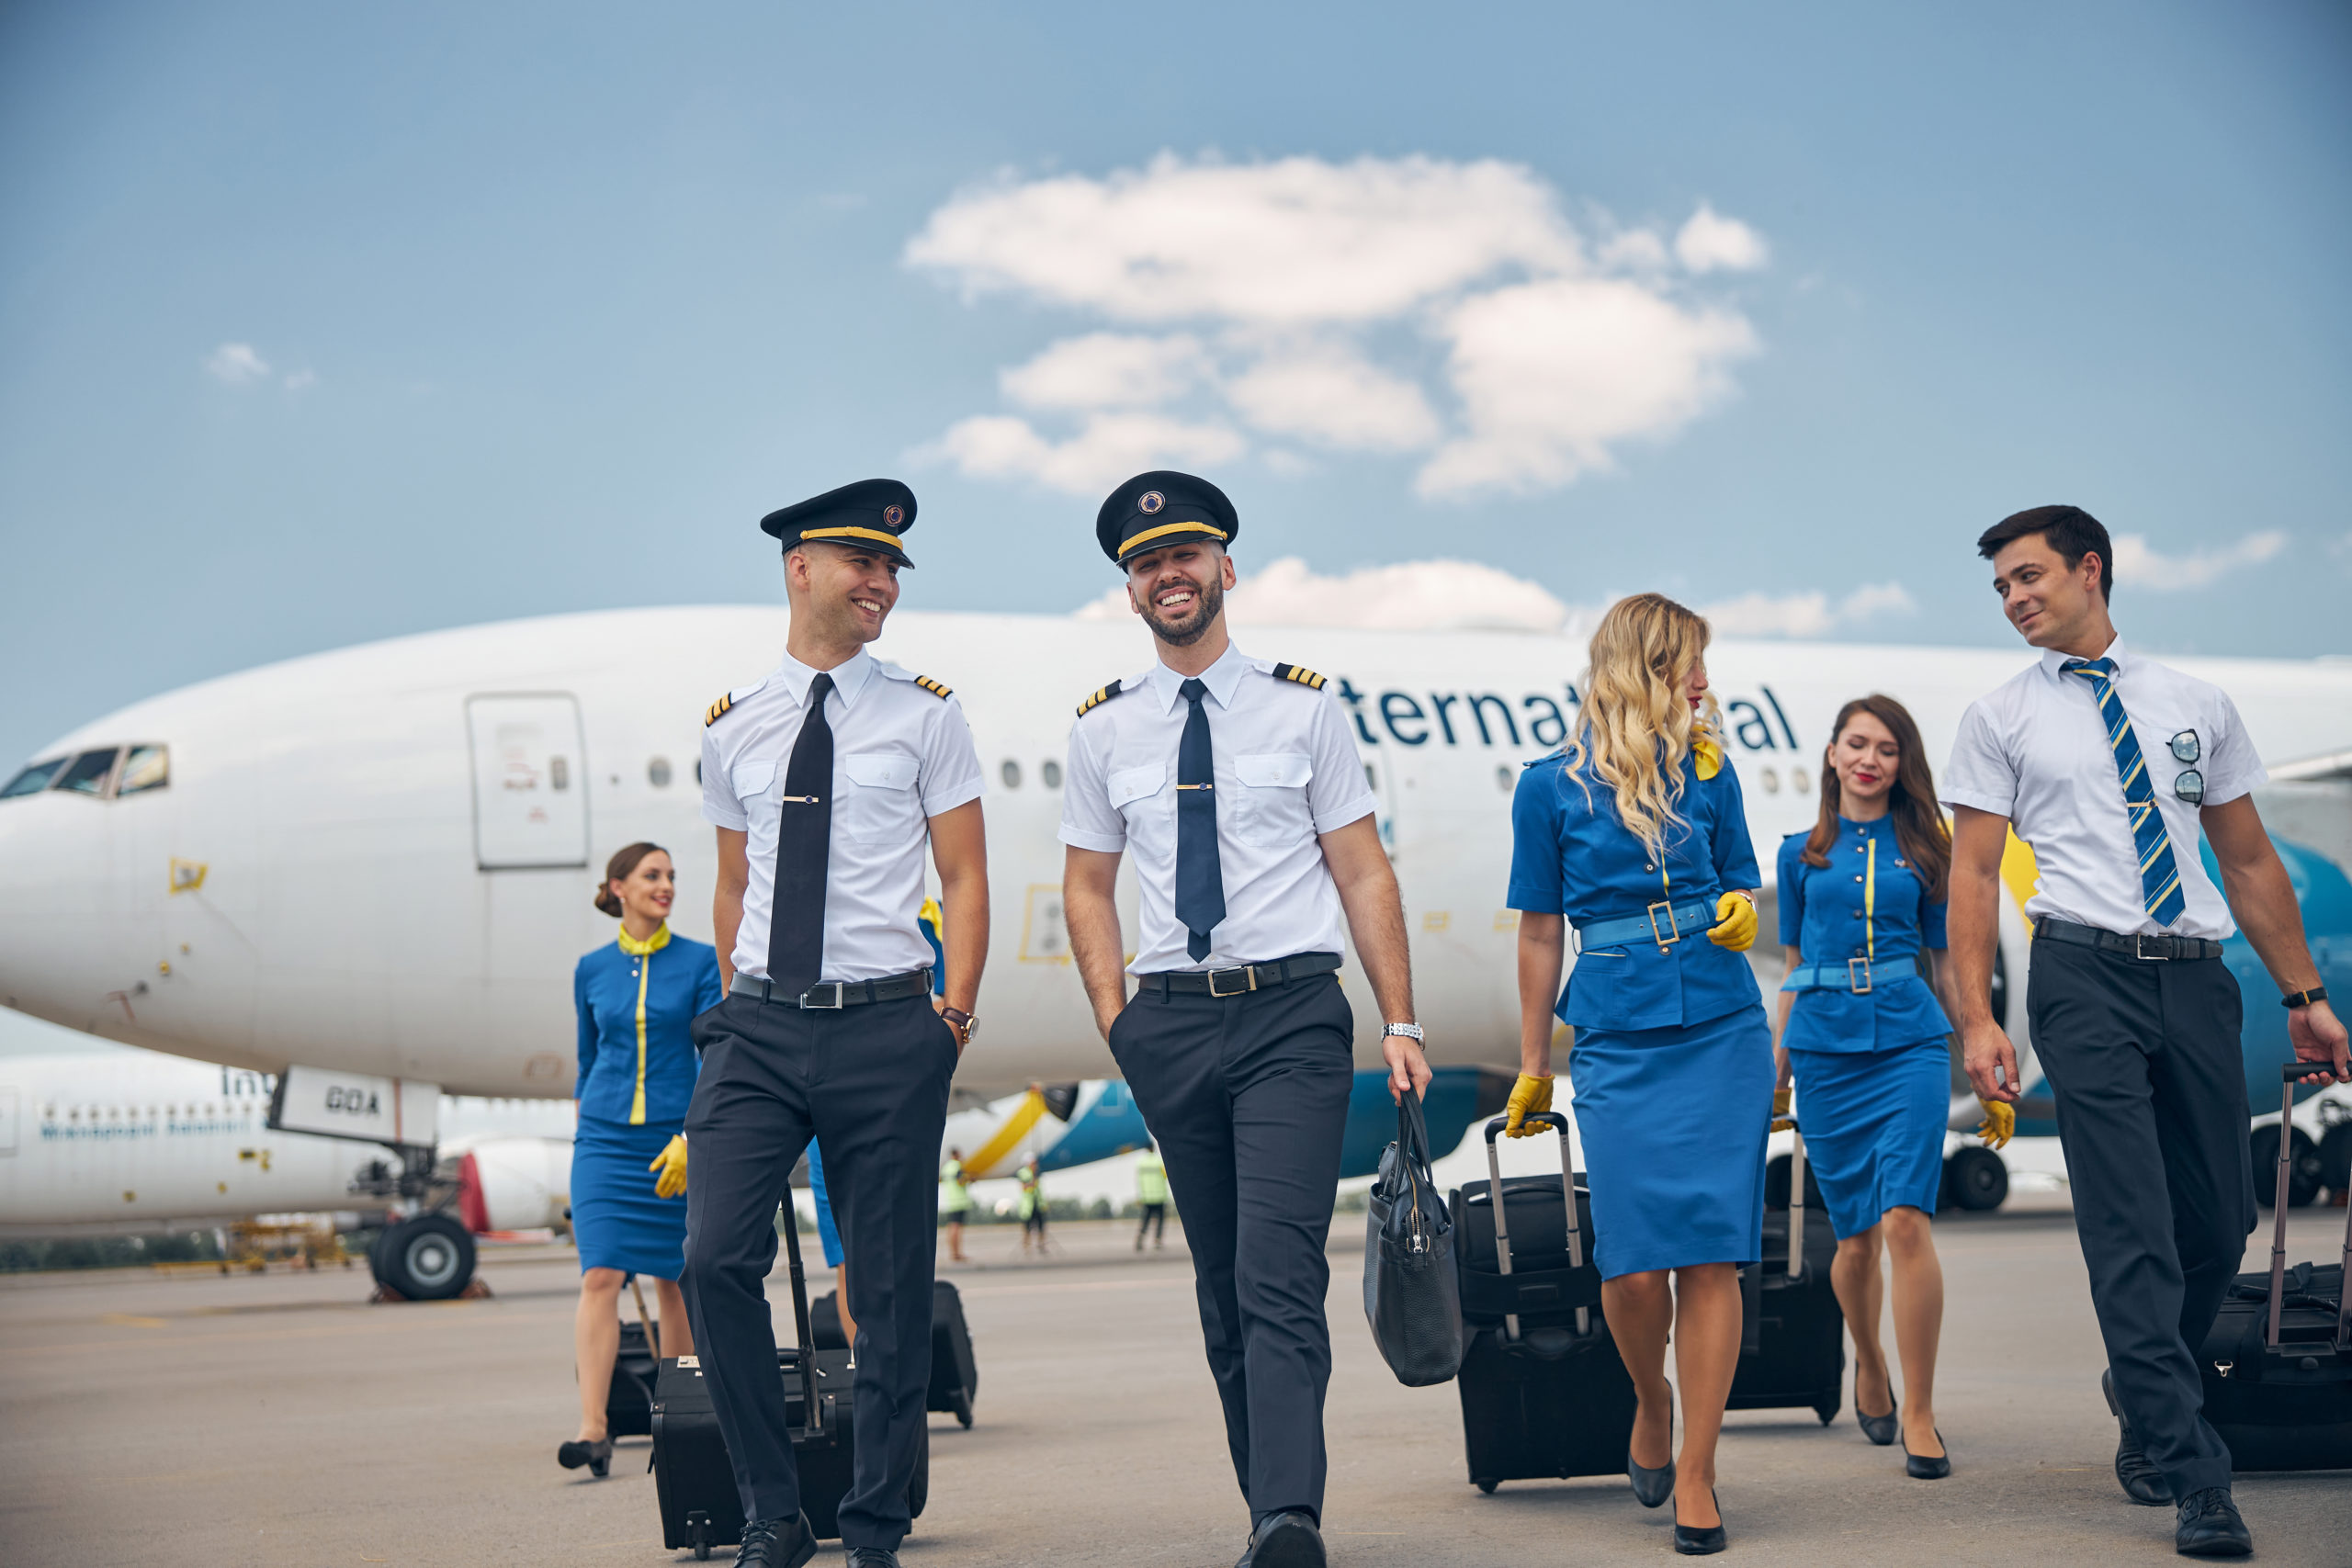 Des pilotes séduisants et de charmantes hôtesses de l'air discutent et sourient en trimballant des valises à l'aéroport avec un avion en arrière-plan.